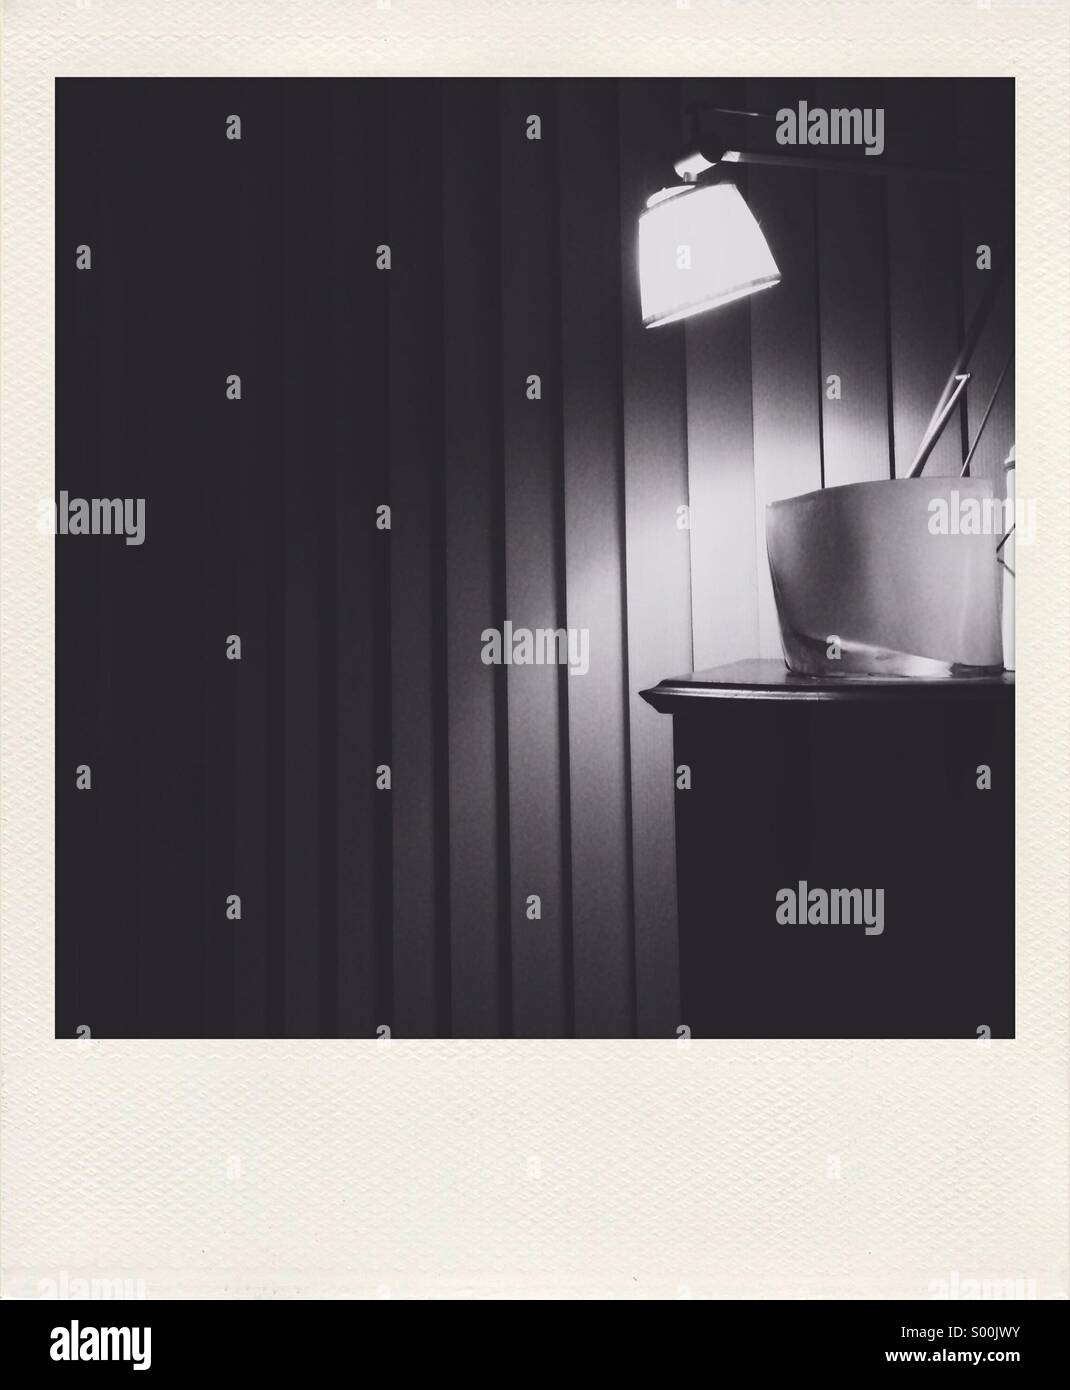 Polaroid-Stil schwarz / weiß-Foto von Philippe Stärke Designerleuchte gegen vertikale Jalousien Stockfoto